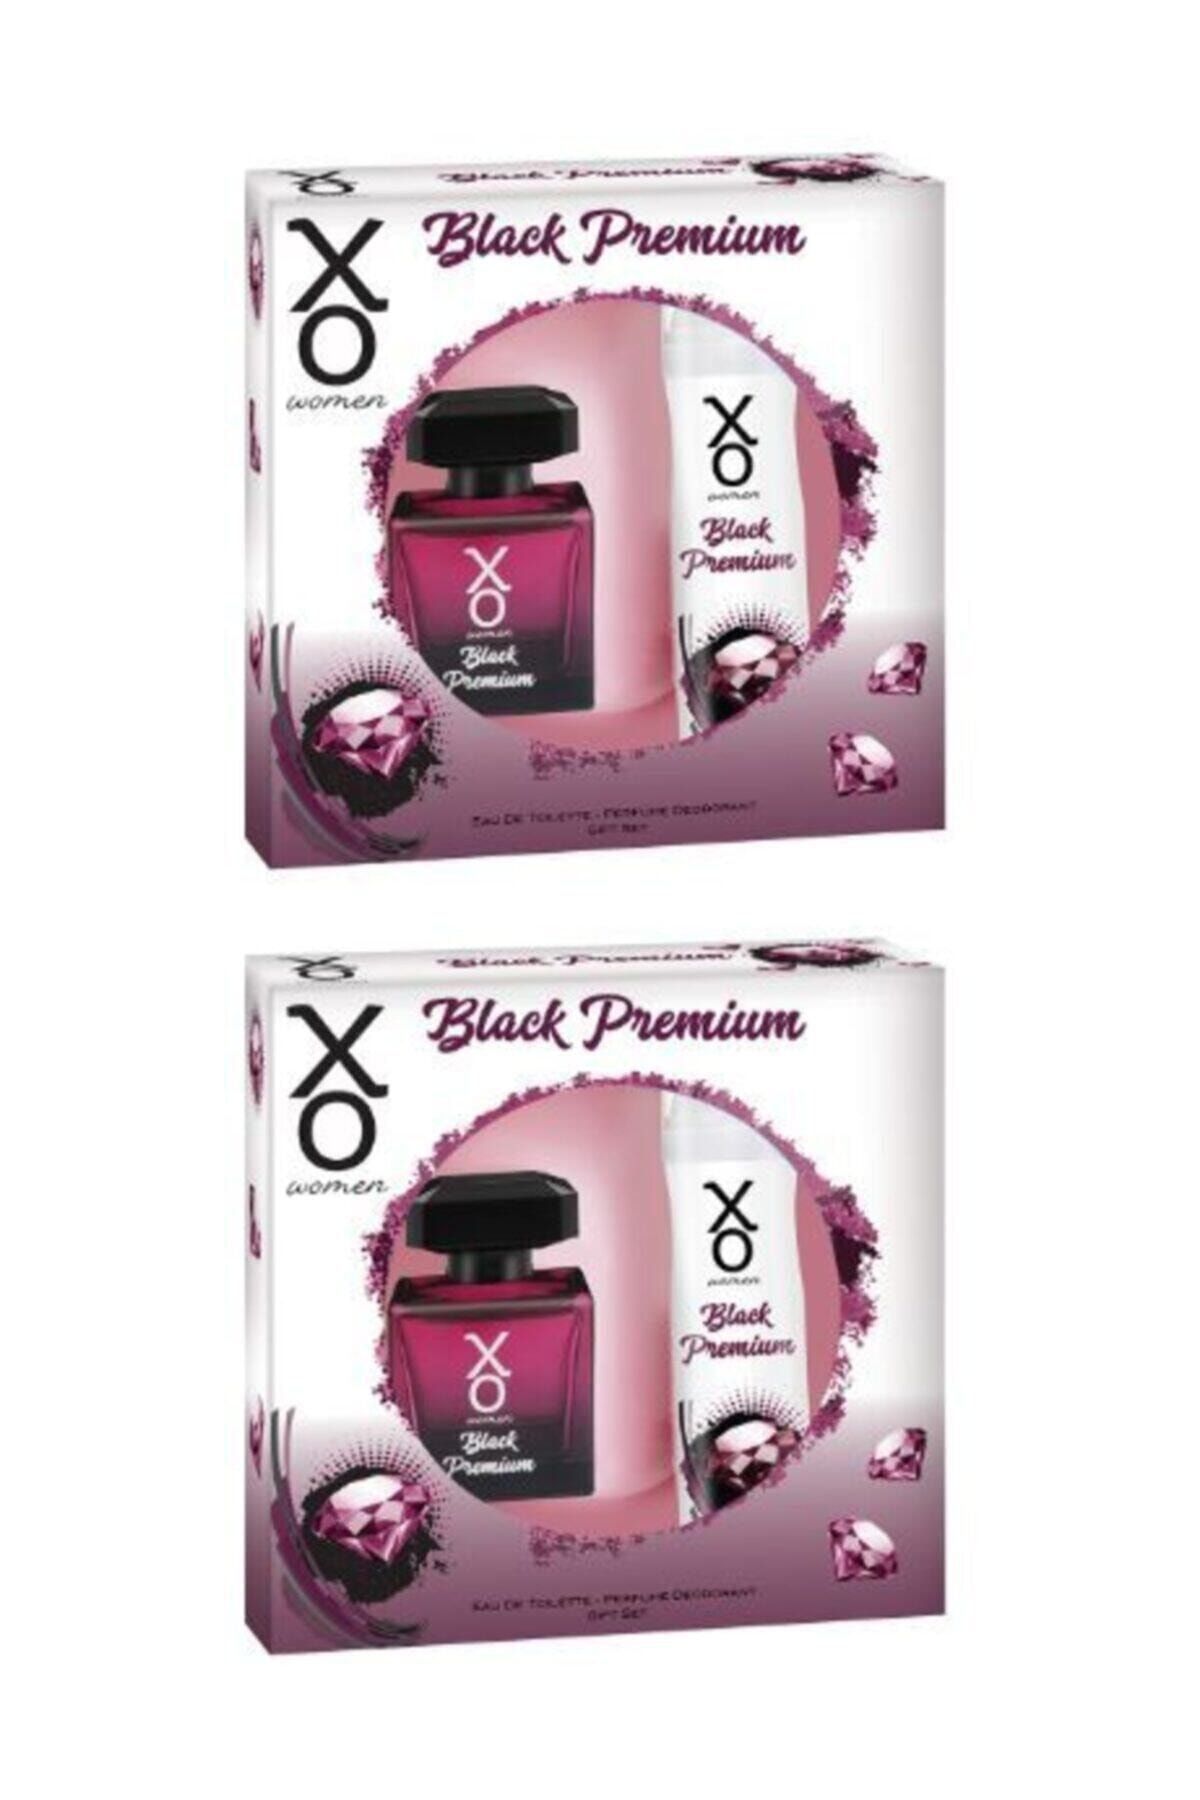 Xo Kadın Black Premium  Edt 100 ml + Deodorant 125 ml   2 Adet